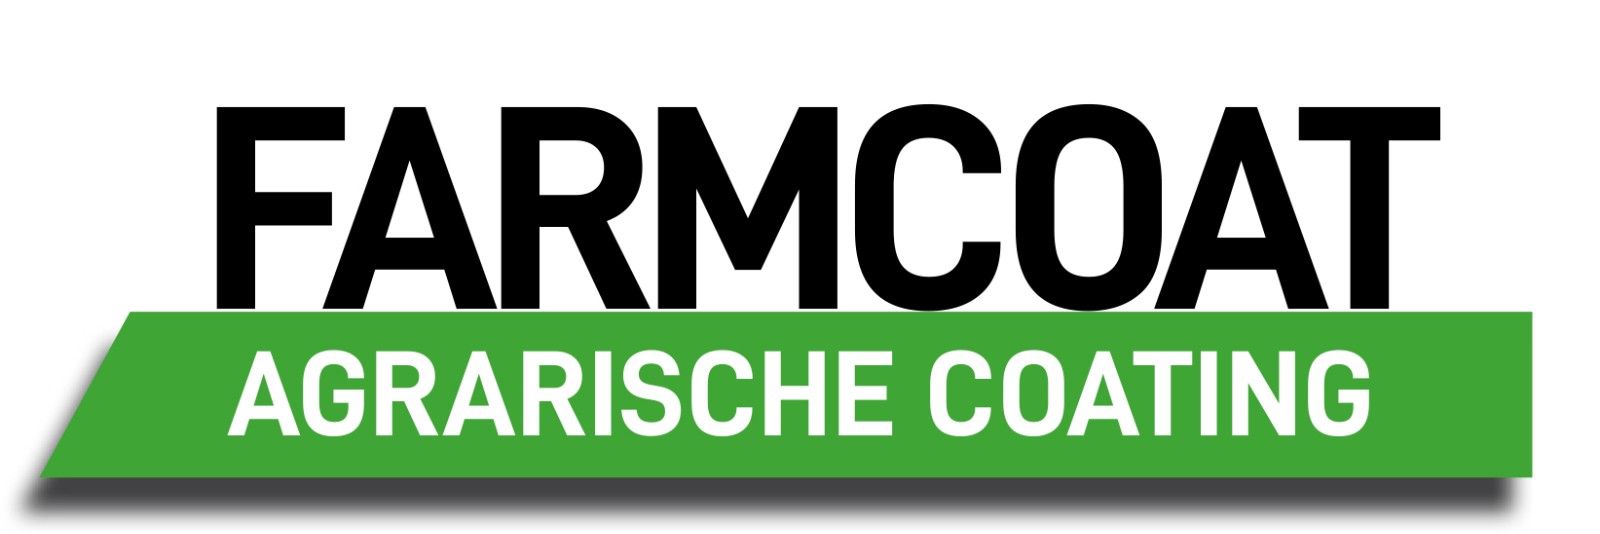 Farmcoat logo